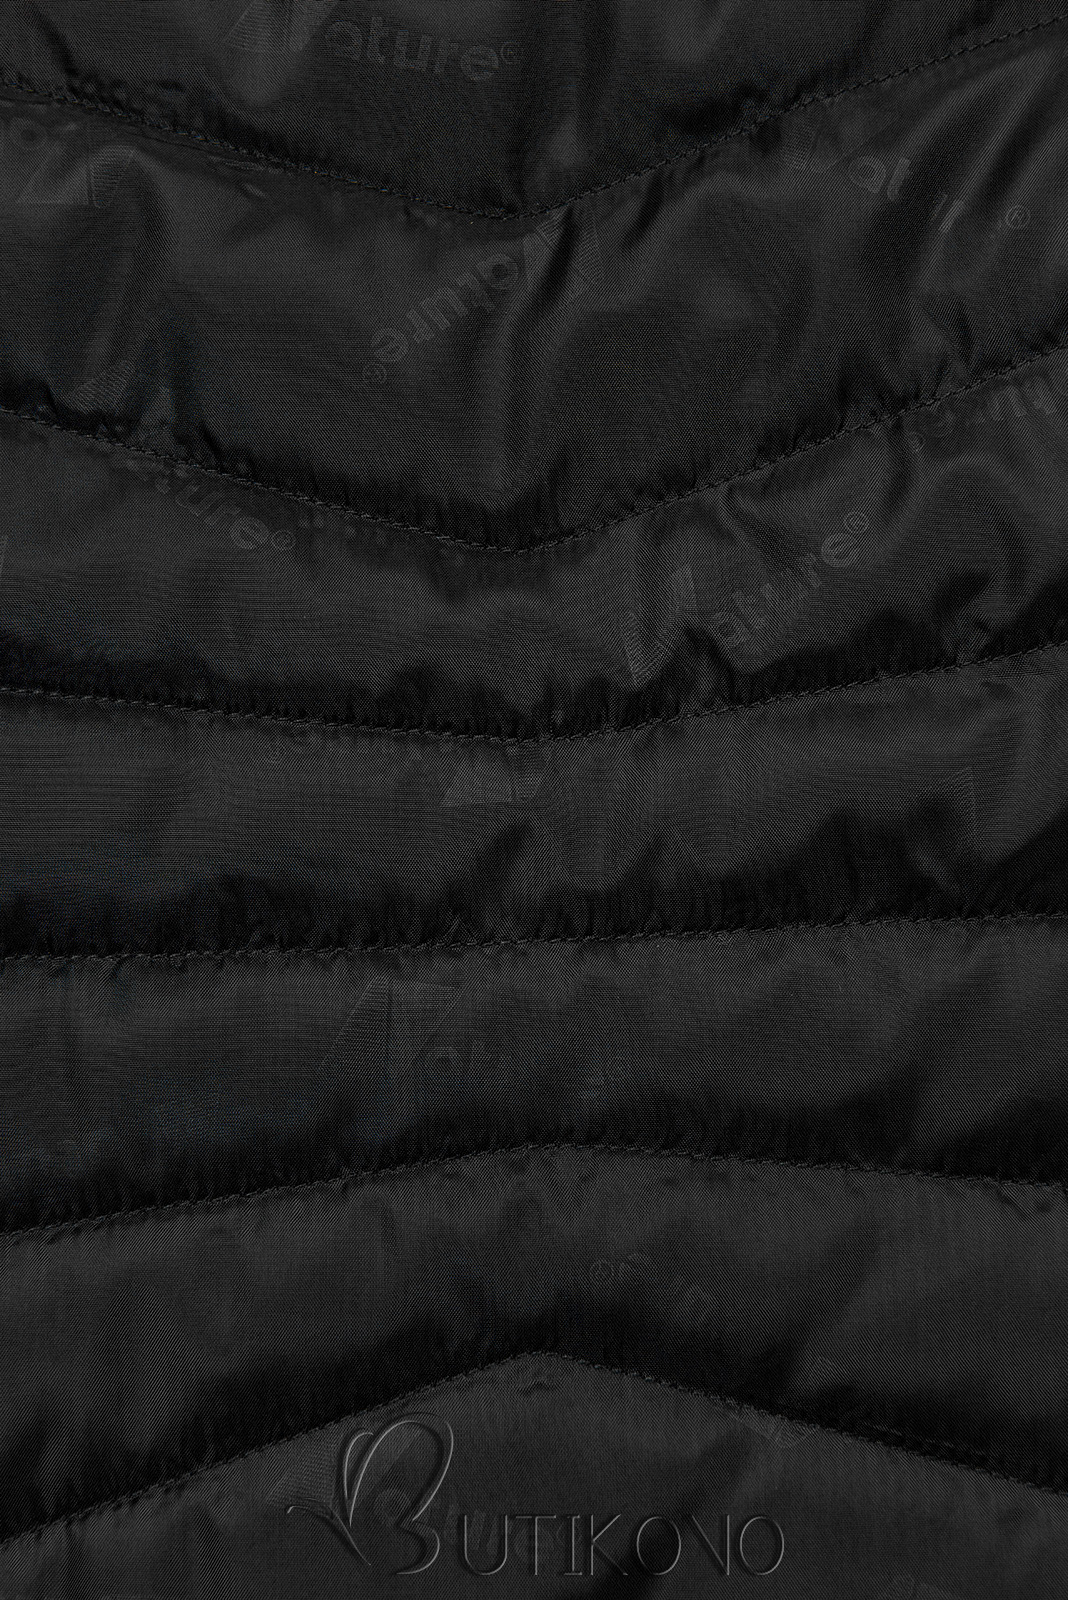 Prošívaná lehká bunda černá